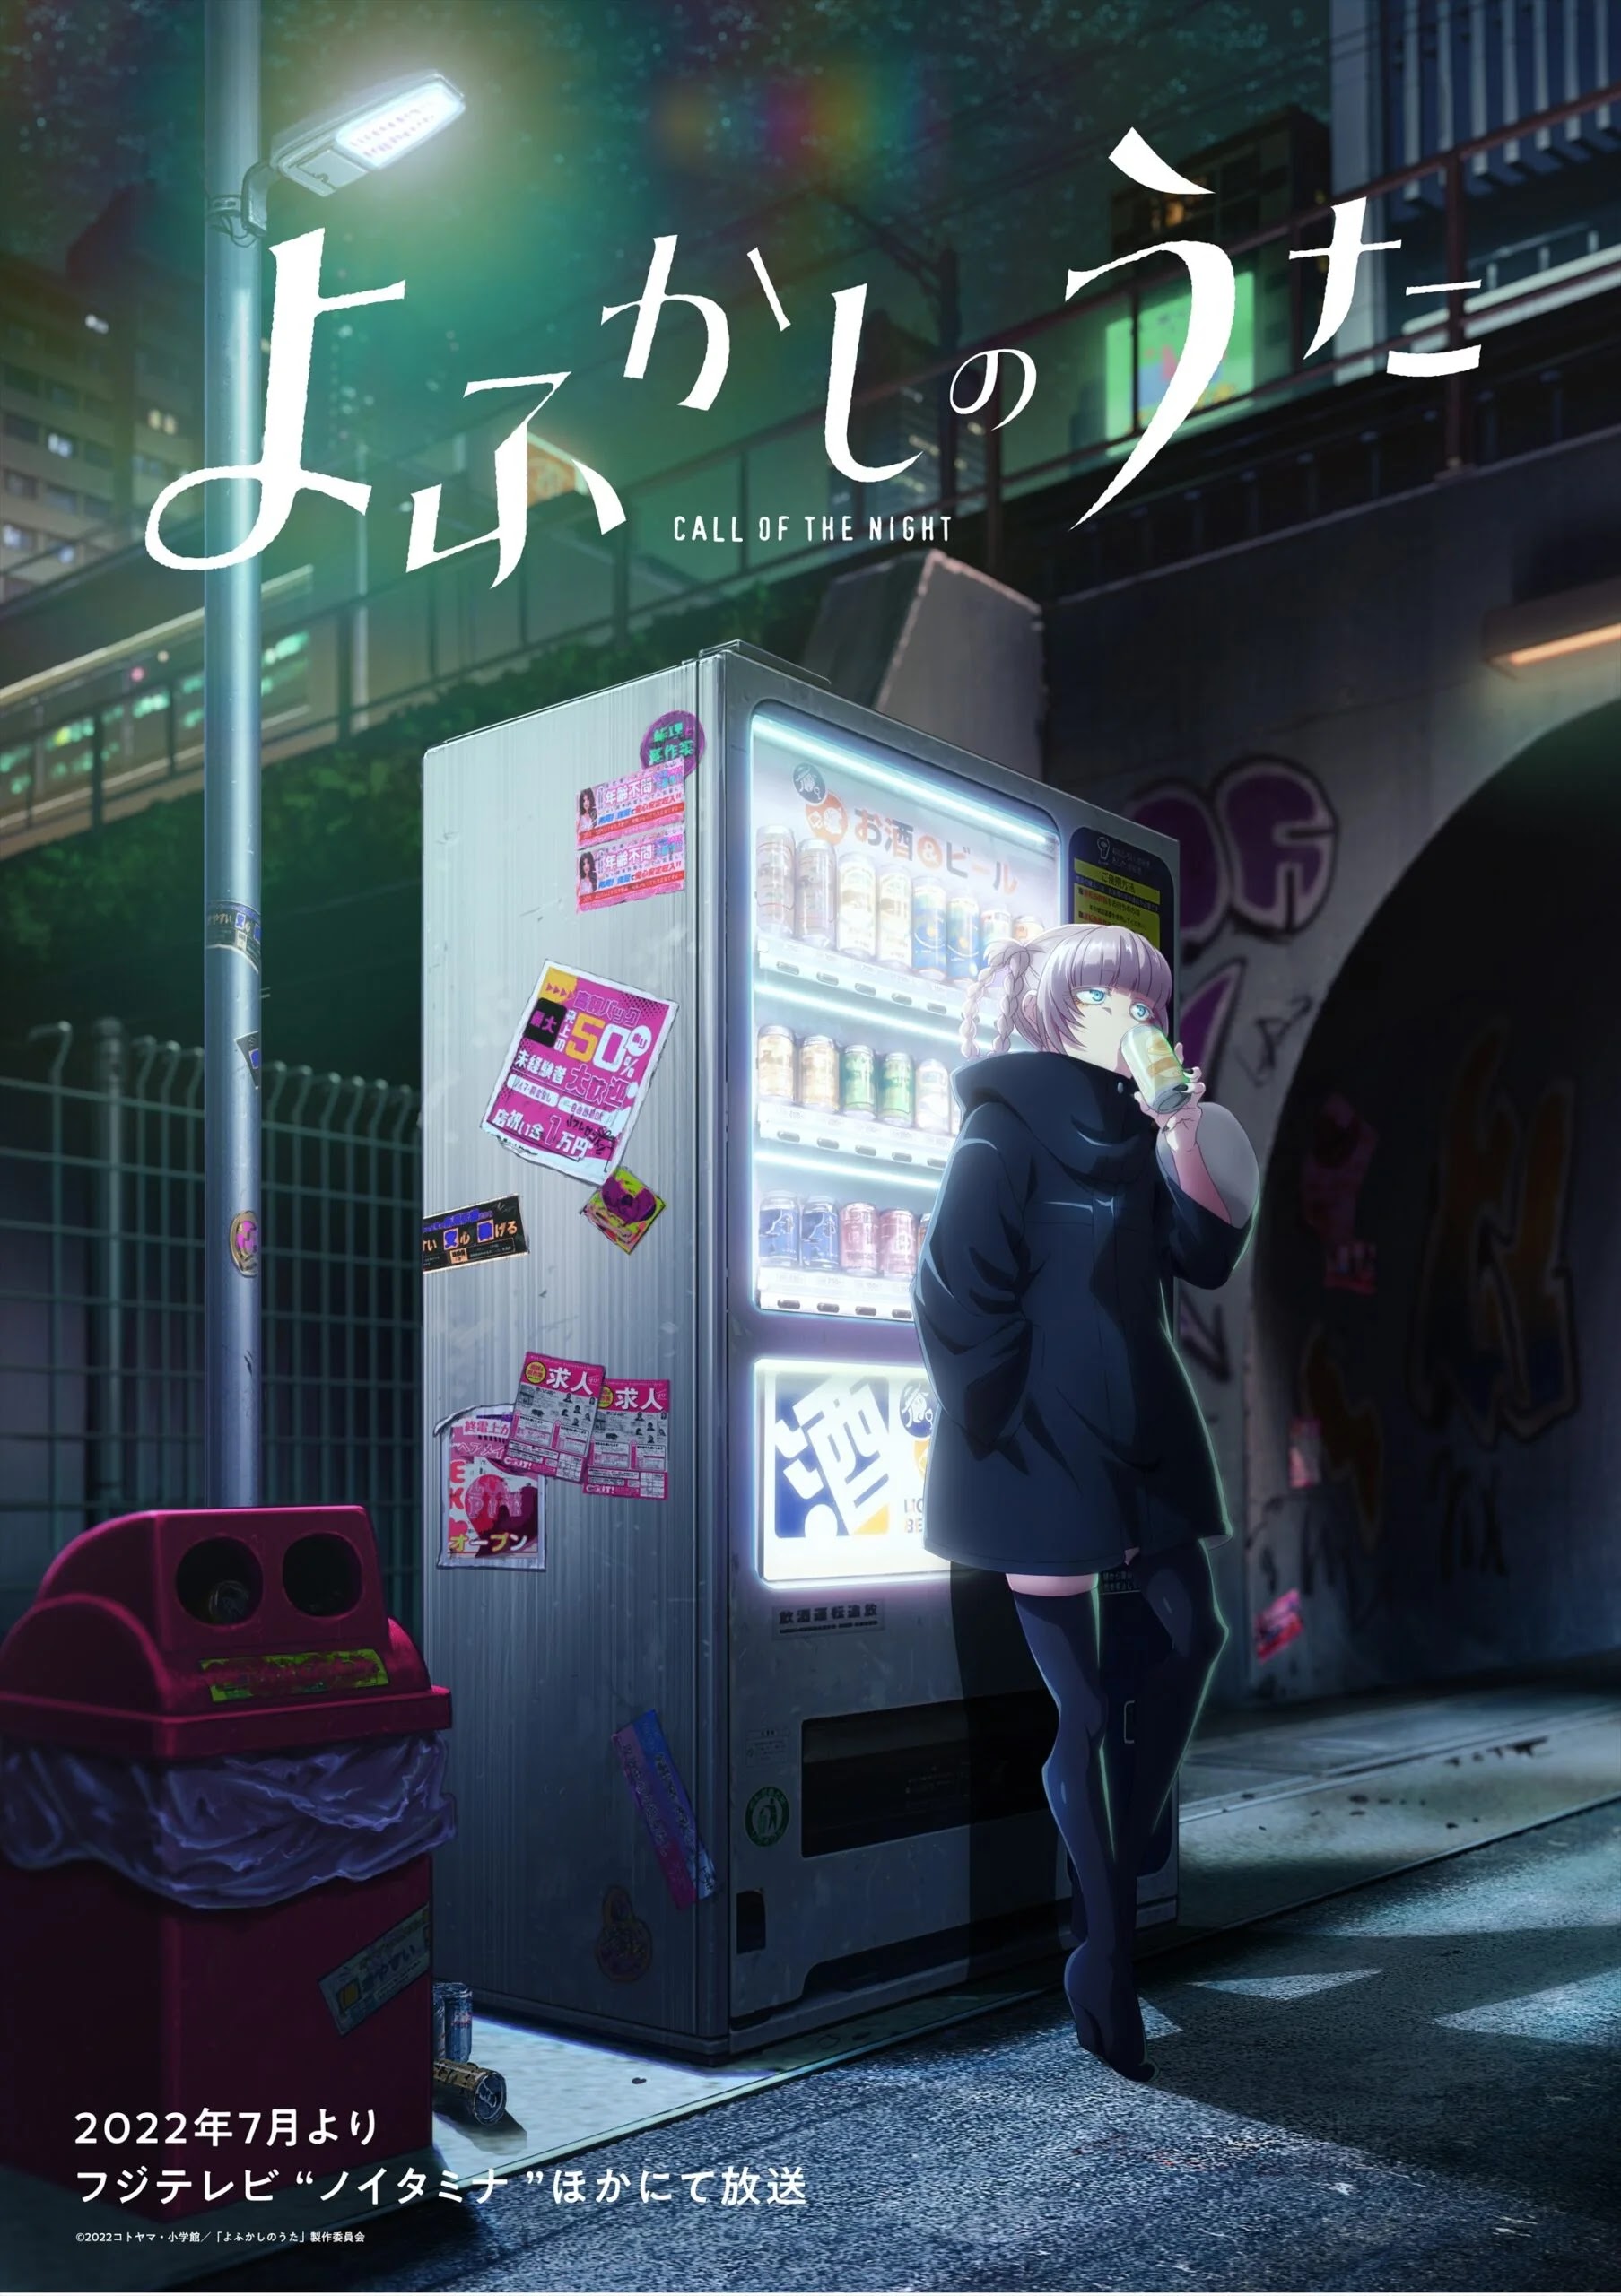 Novo Trailer do Anime Yofukashi no Uta é Estrelado por Nazuna Nanakusa